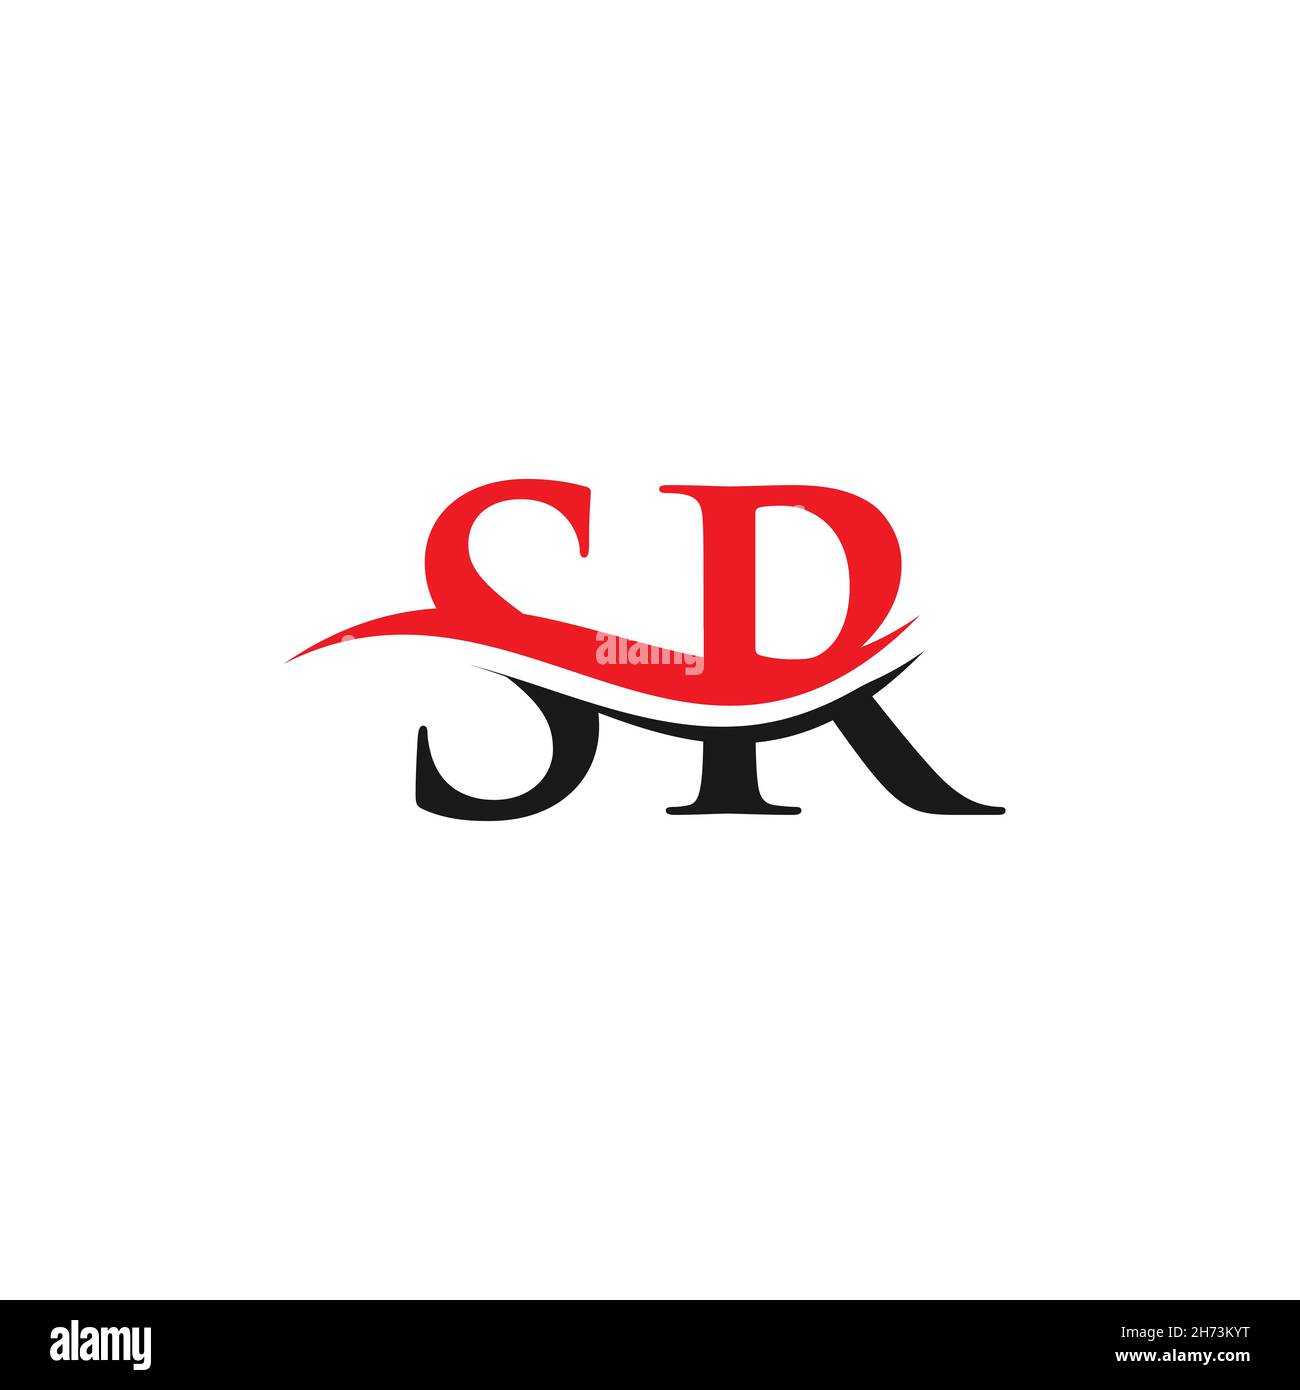 SR logo design. Initial SR letter logo design. Stock Vector